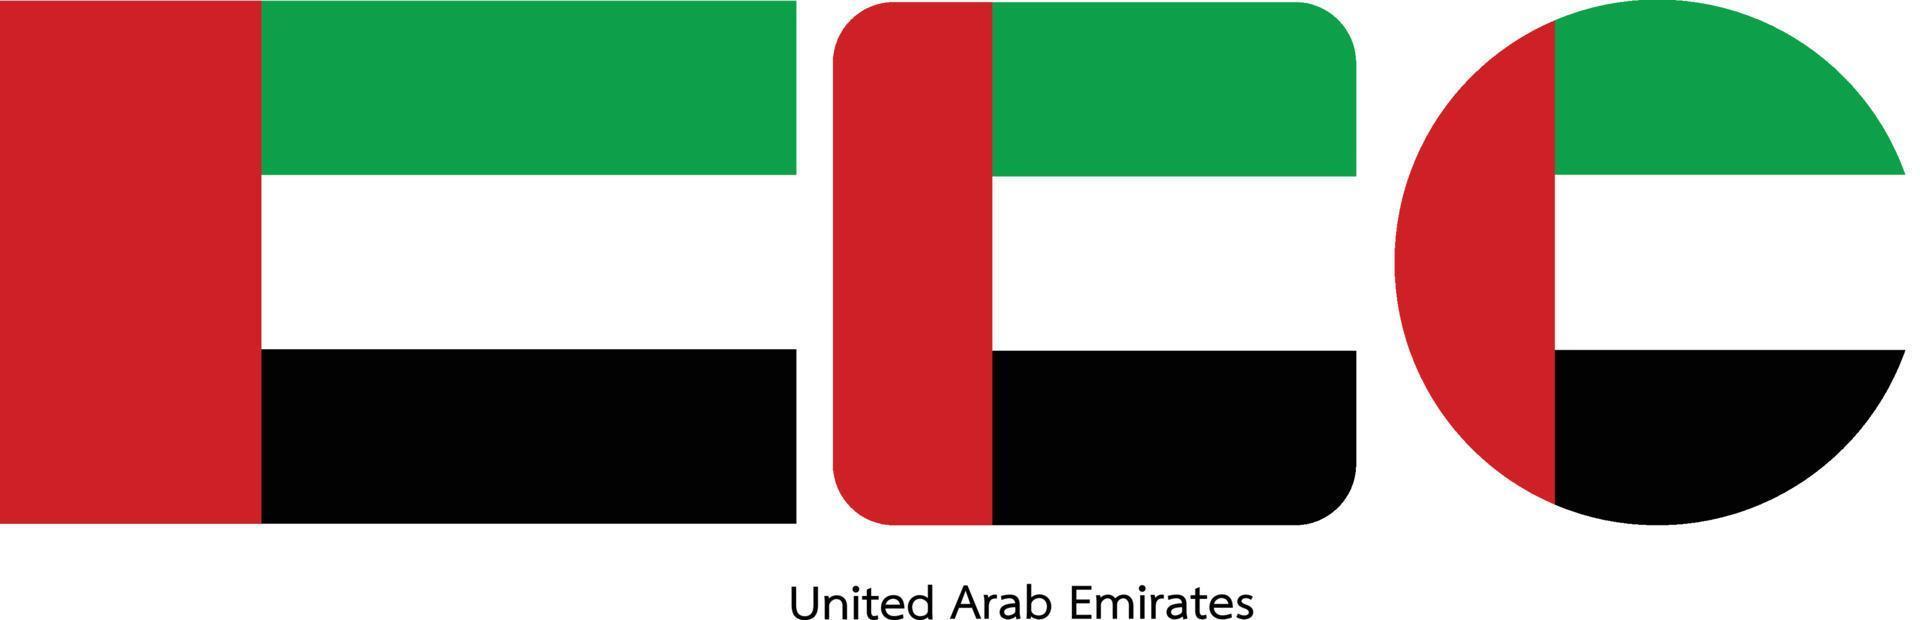 bandiera degli emirati arabi uniti, illustrazione vettoriale